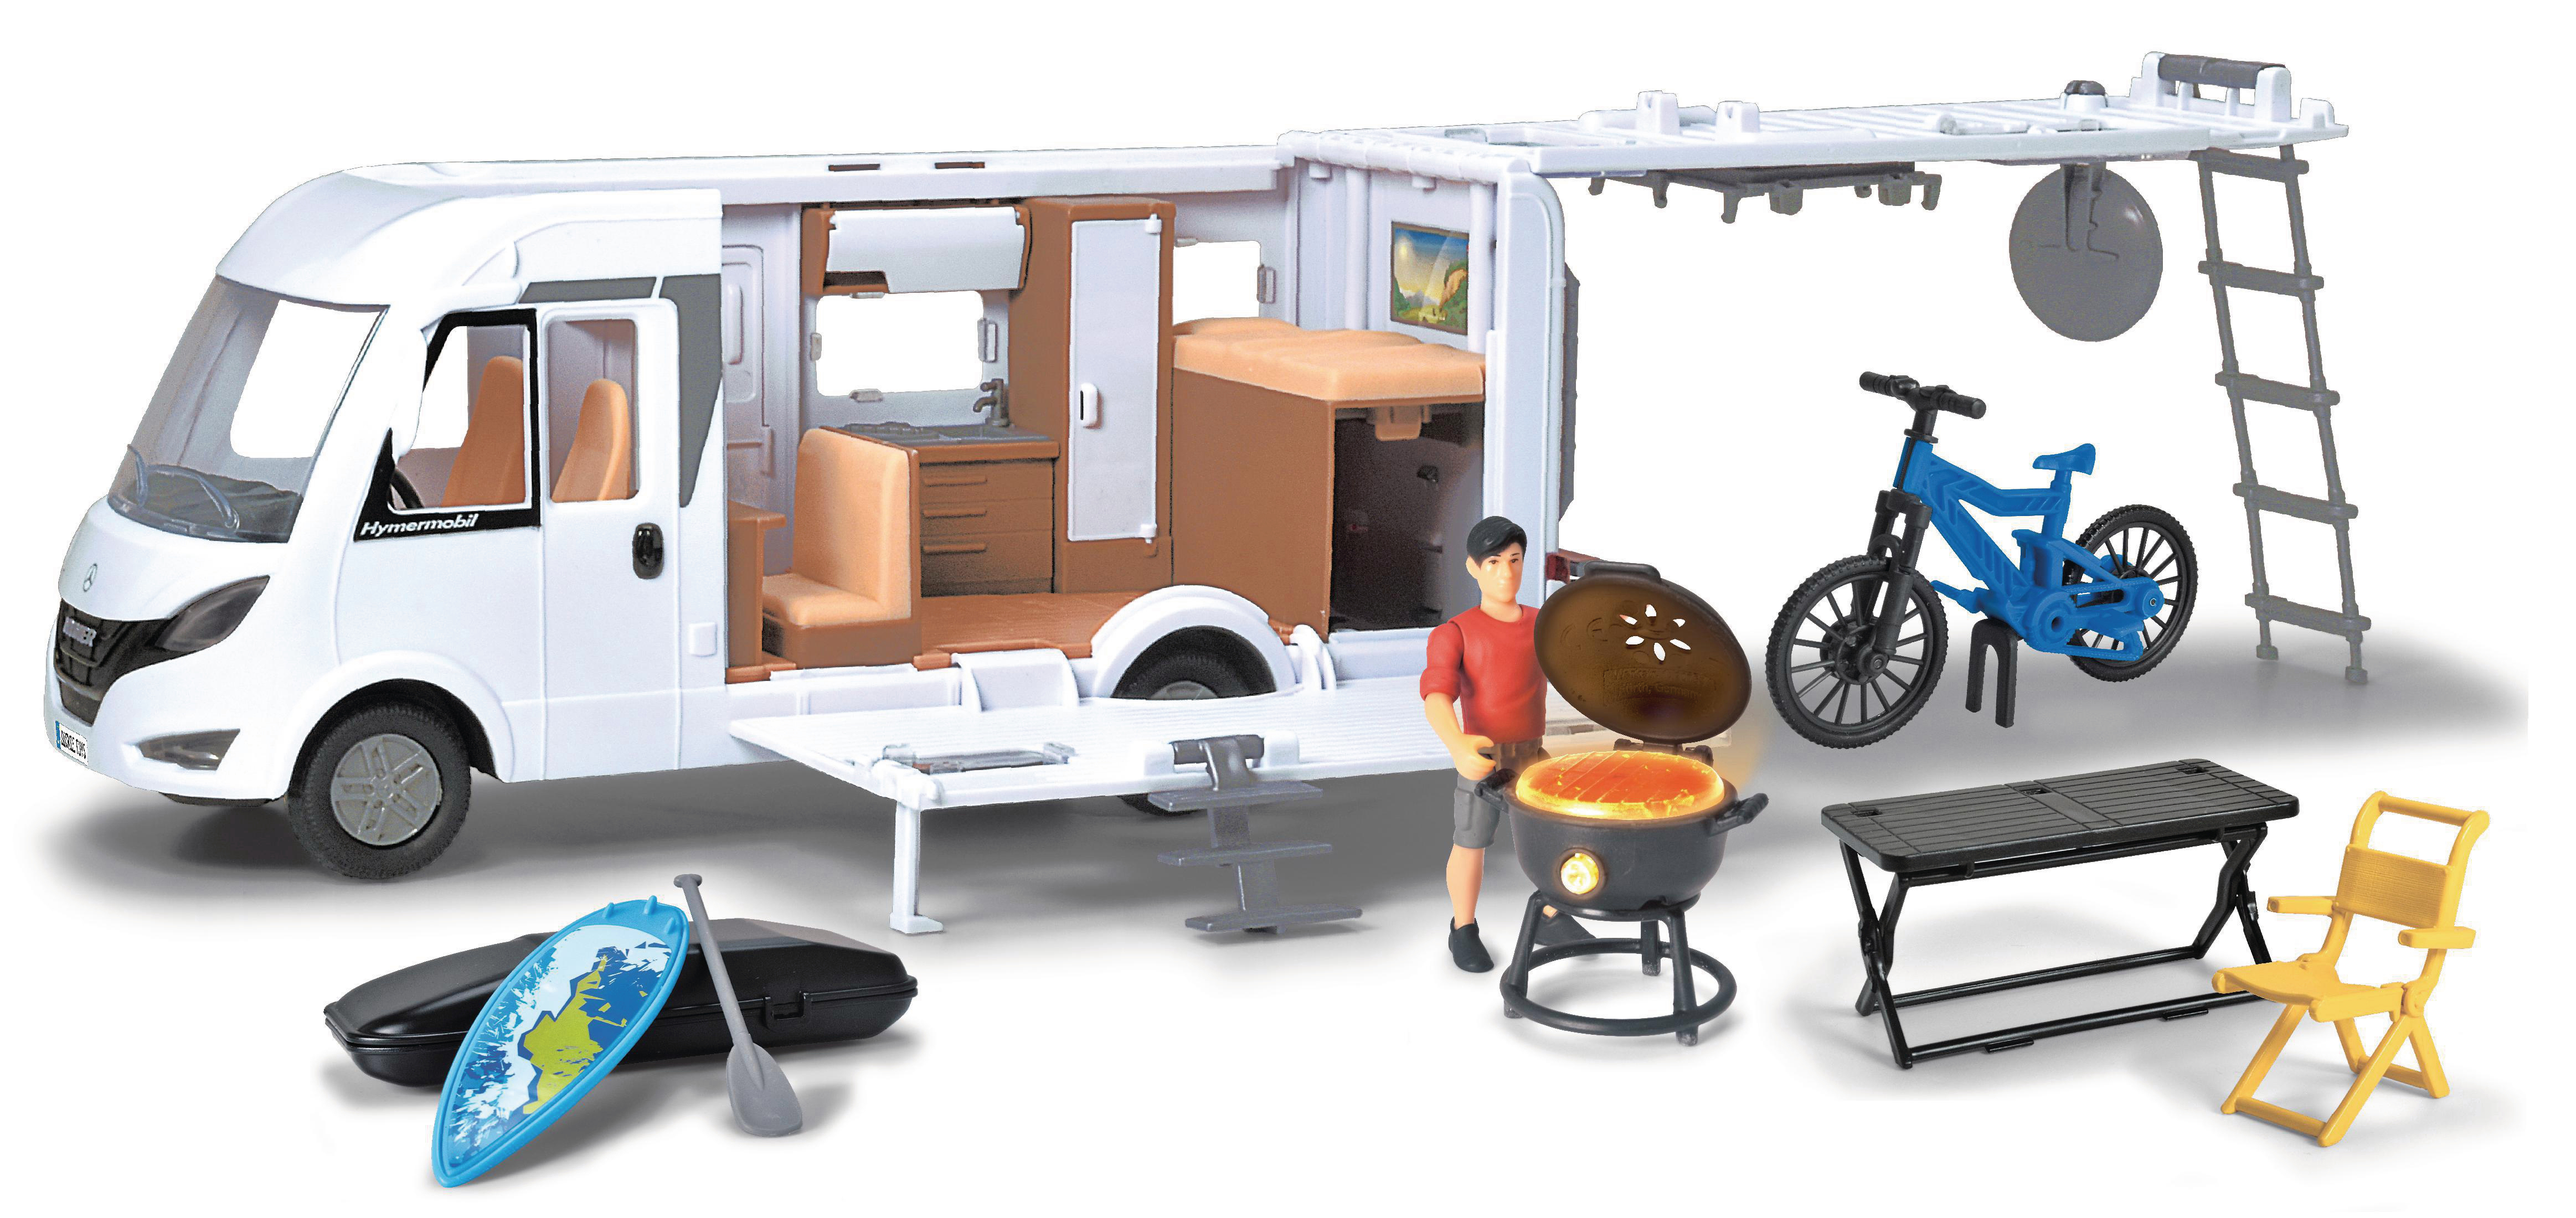 Interieur Van Set, mit Spielzeugauto DICKIE-TOYS Hymer Camping Camper Weiß